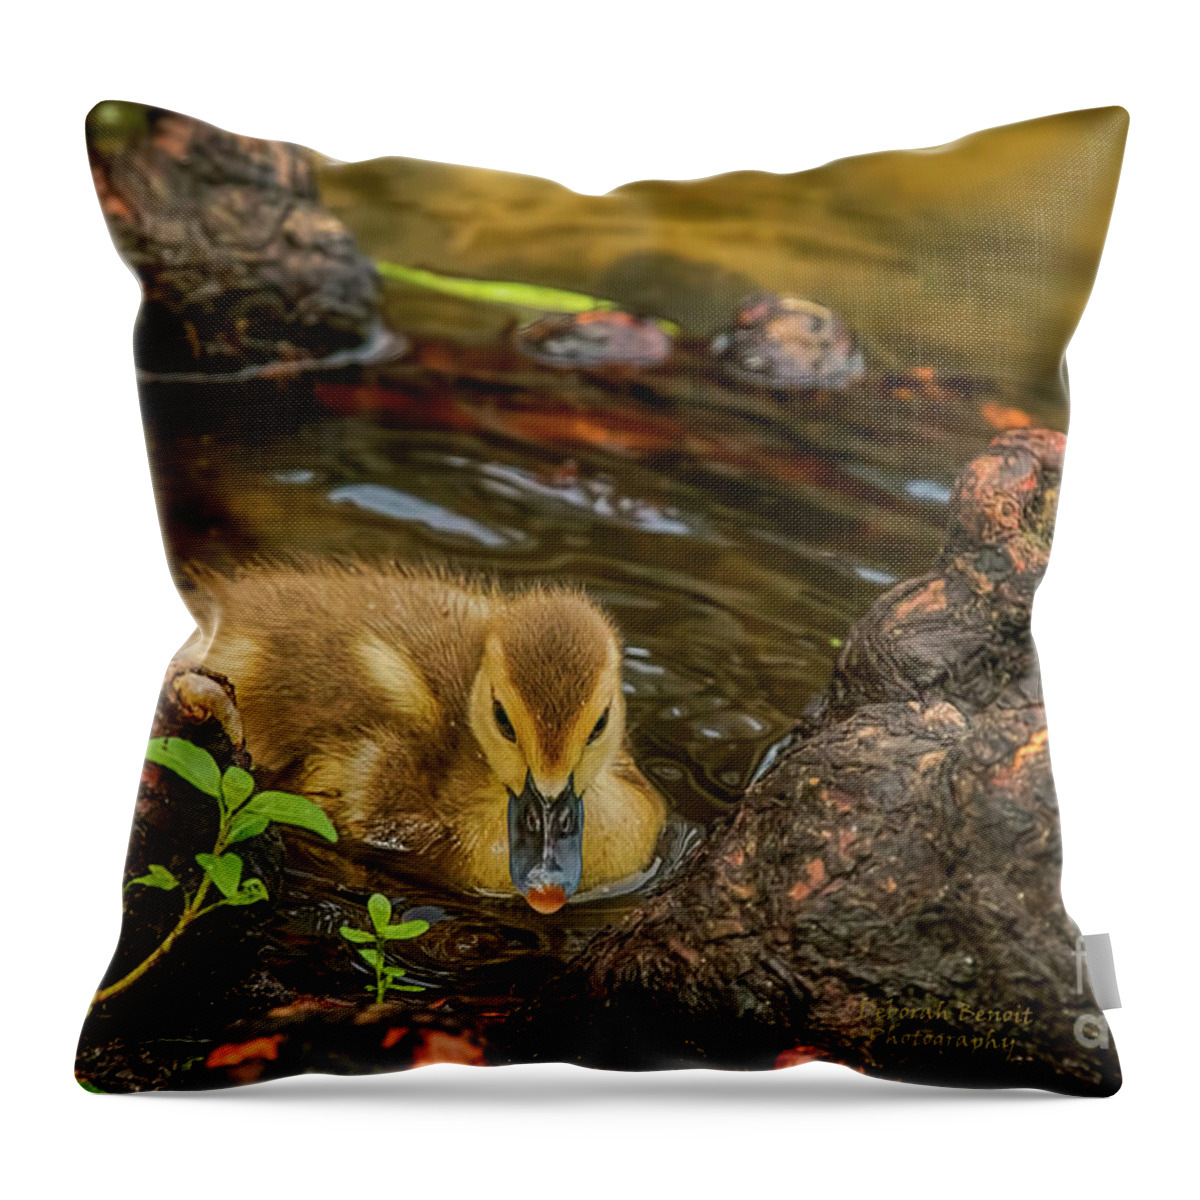 Duck Throw Pillow featuring the photograph Little Nature Gem by Deborah Benoit